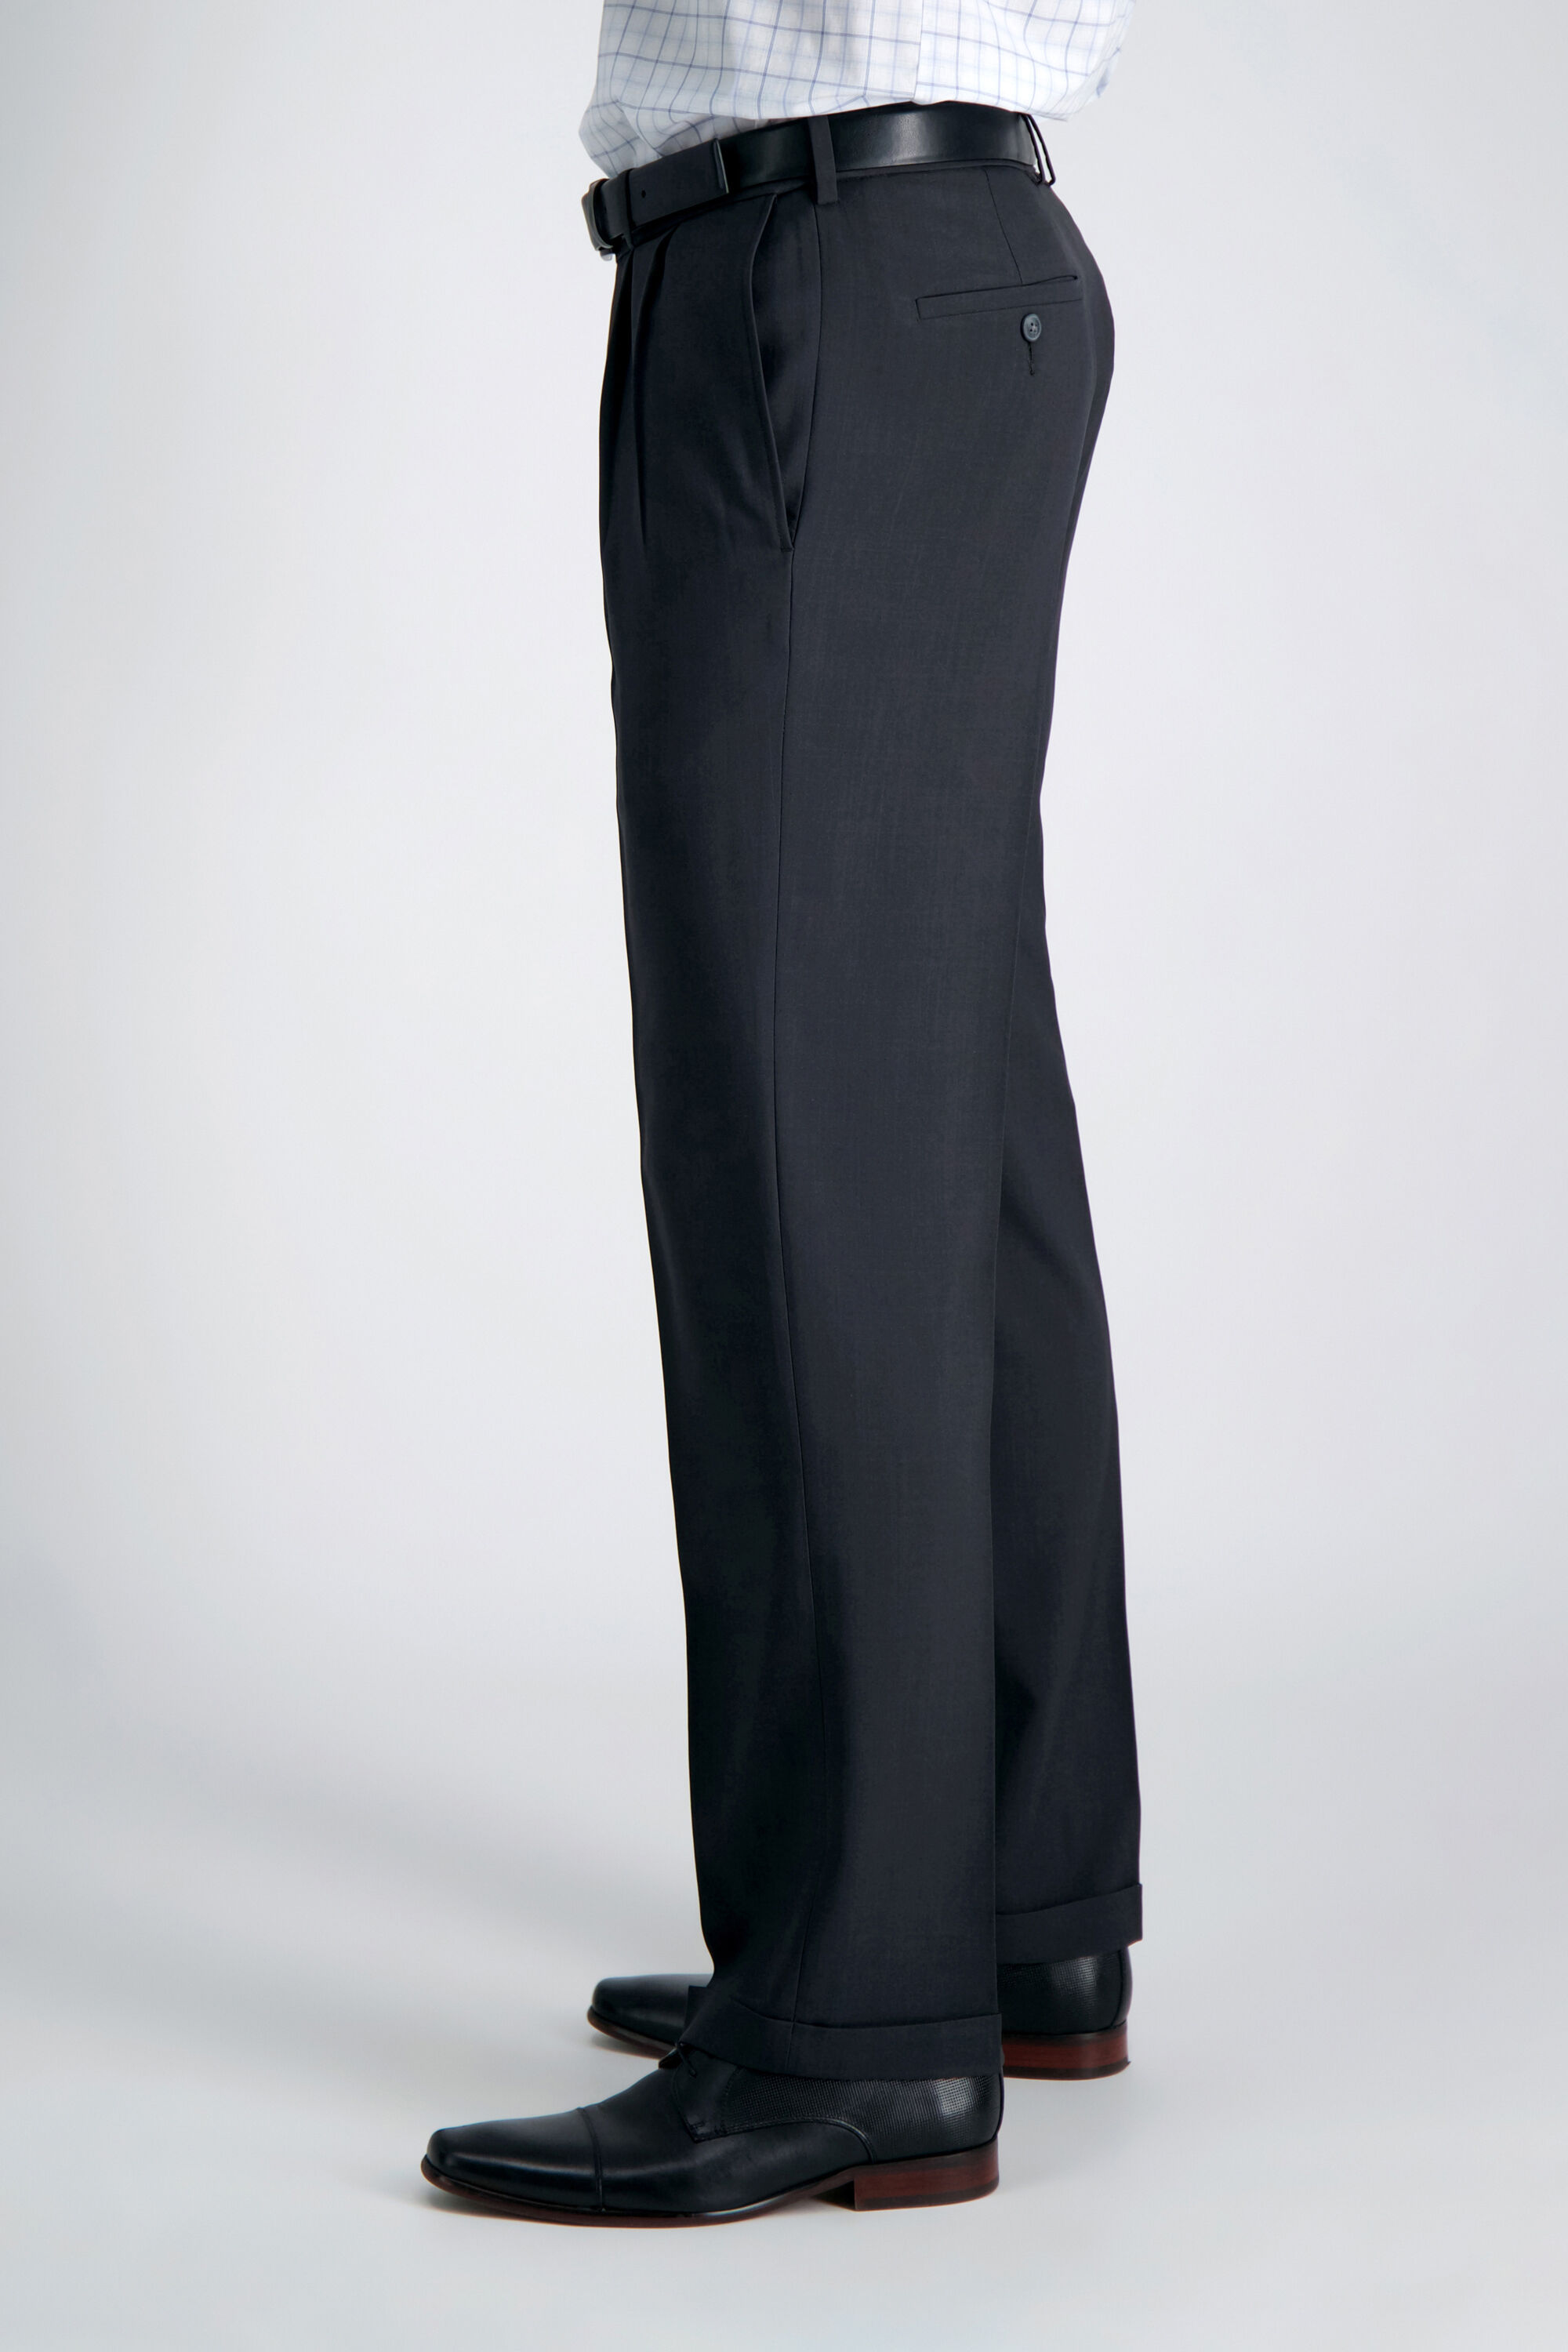 eCLo Stria Dress Pant | Classic Fit, Pleat Front, No Iron | Haggar.com